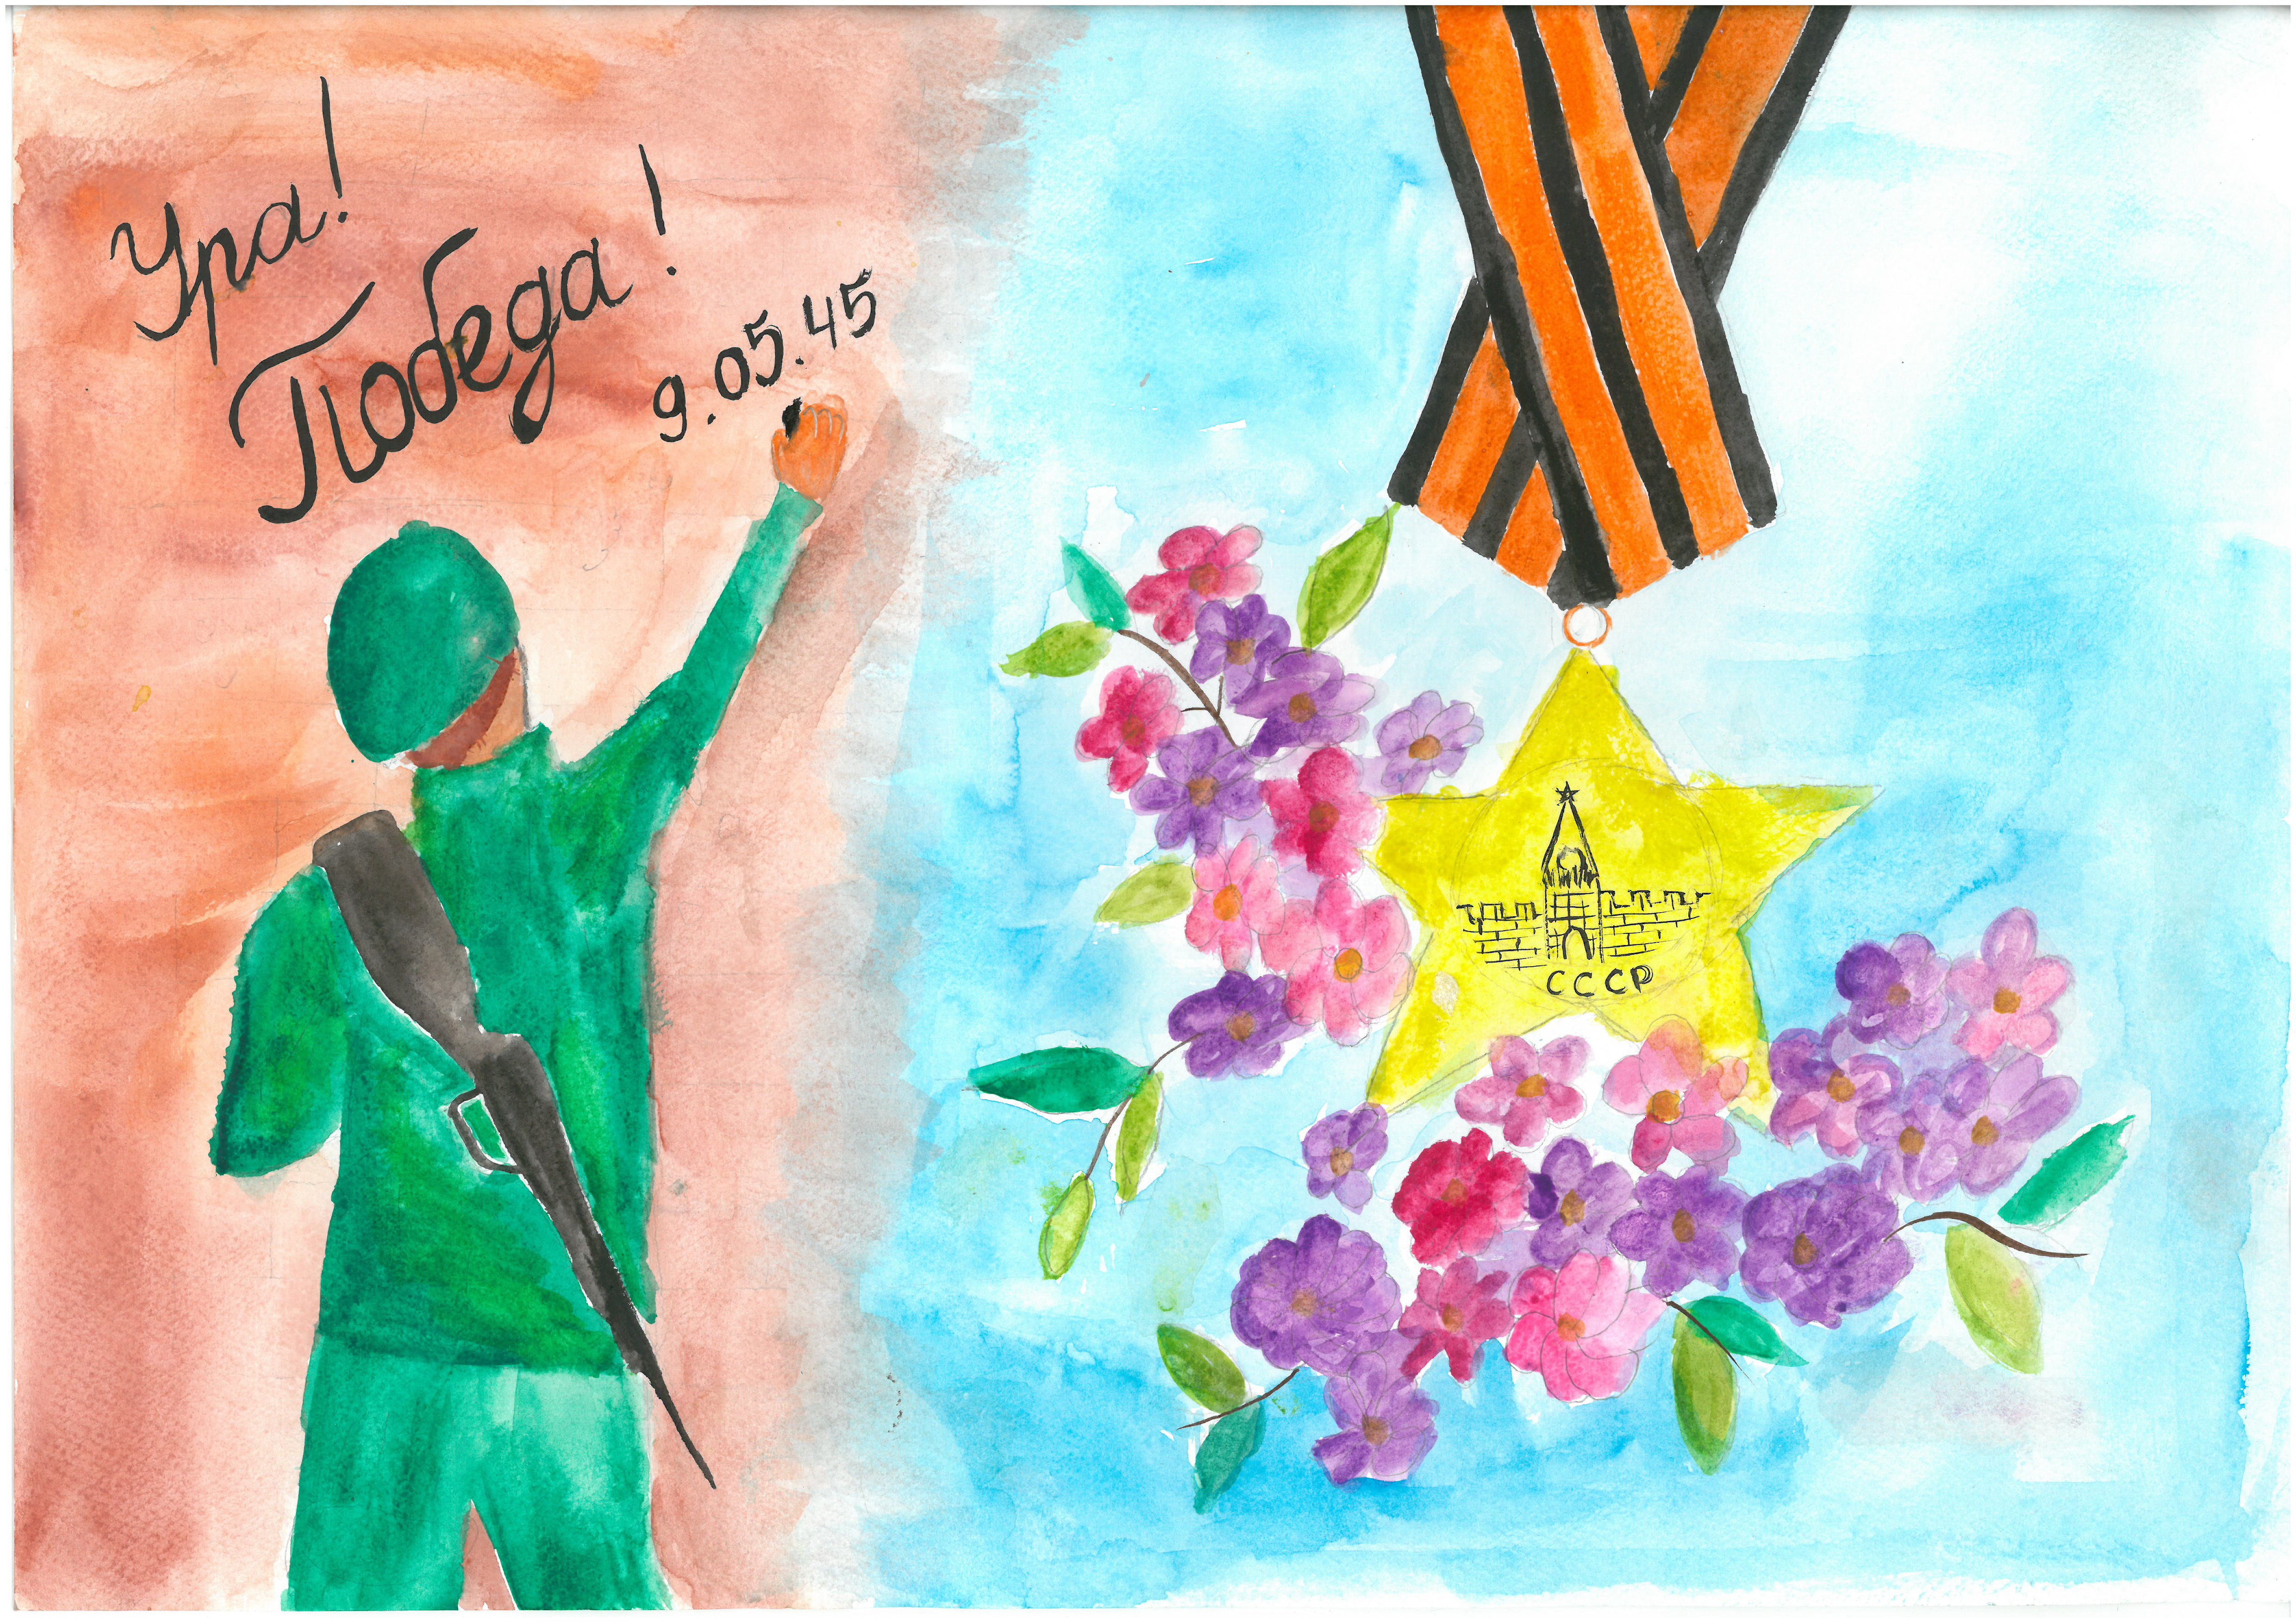 Конкурс детского рисунка «День Победы» 